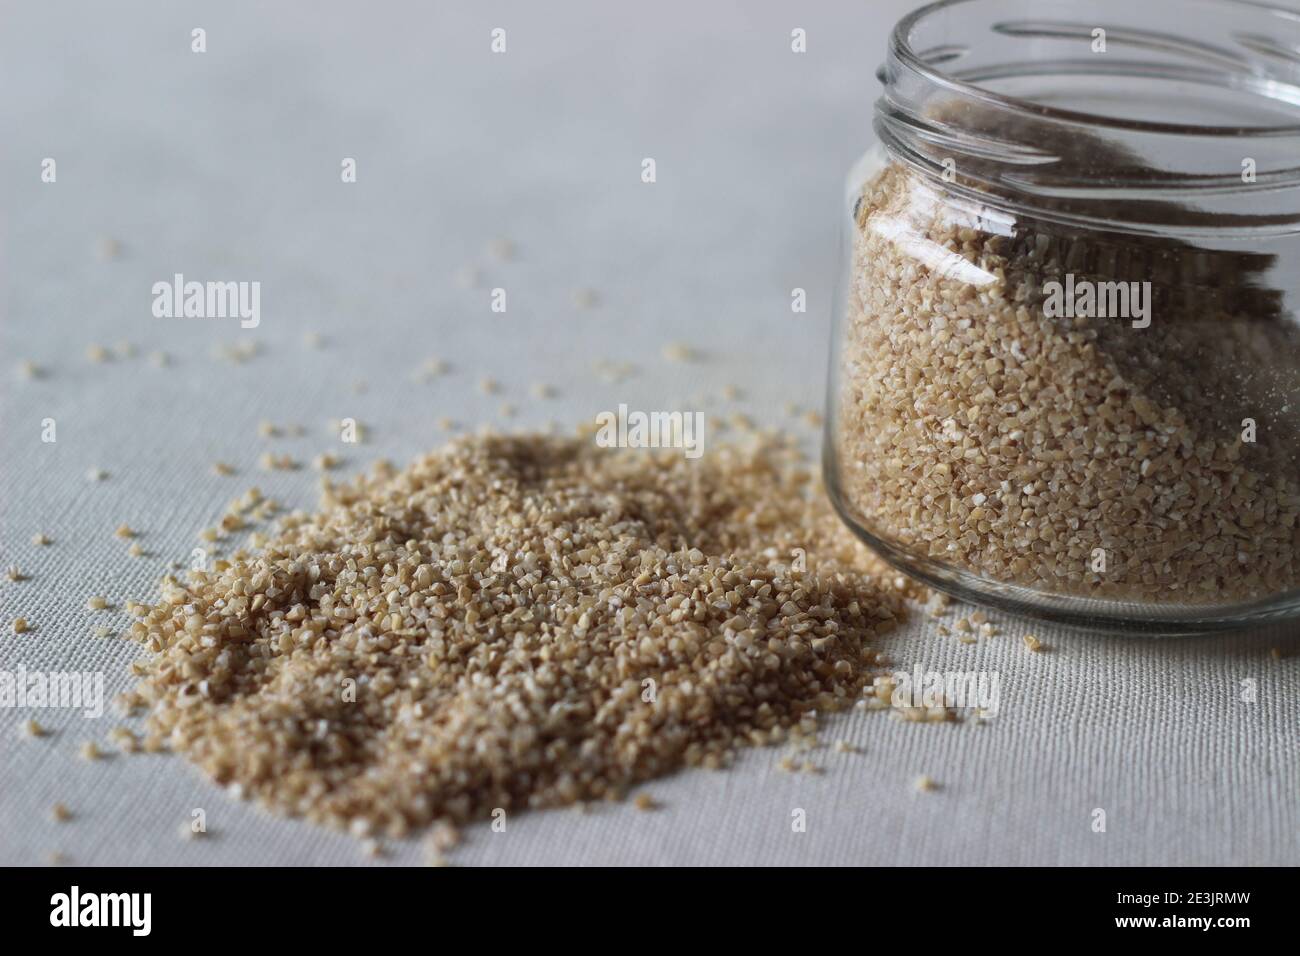 Le blé brisé ou le blé fissuré ou couscous est fabriqué par la mouture de grains de blé entier brut grossièrement utilisé pour rendre sain porridge Banque D'Images